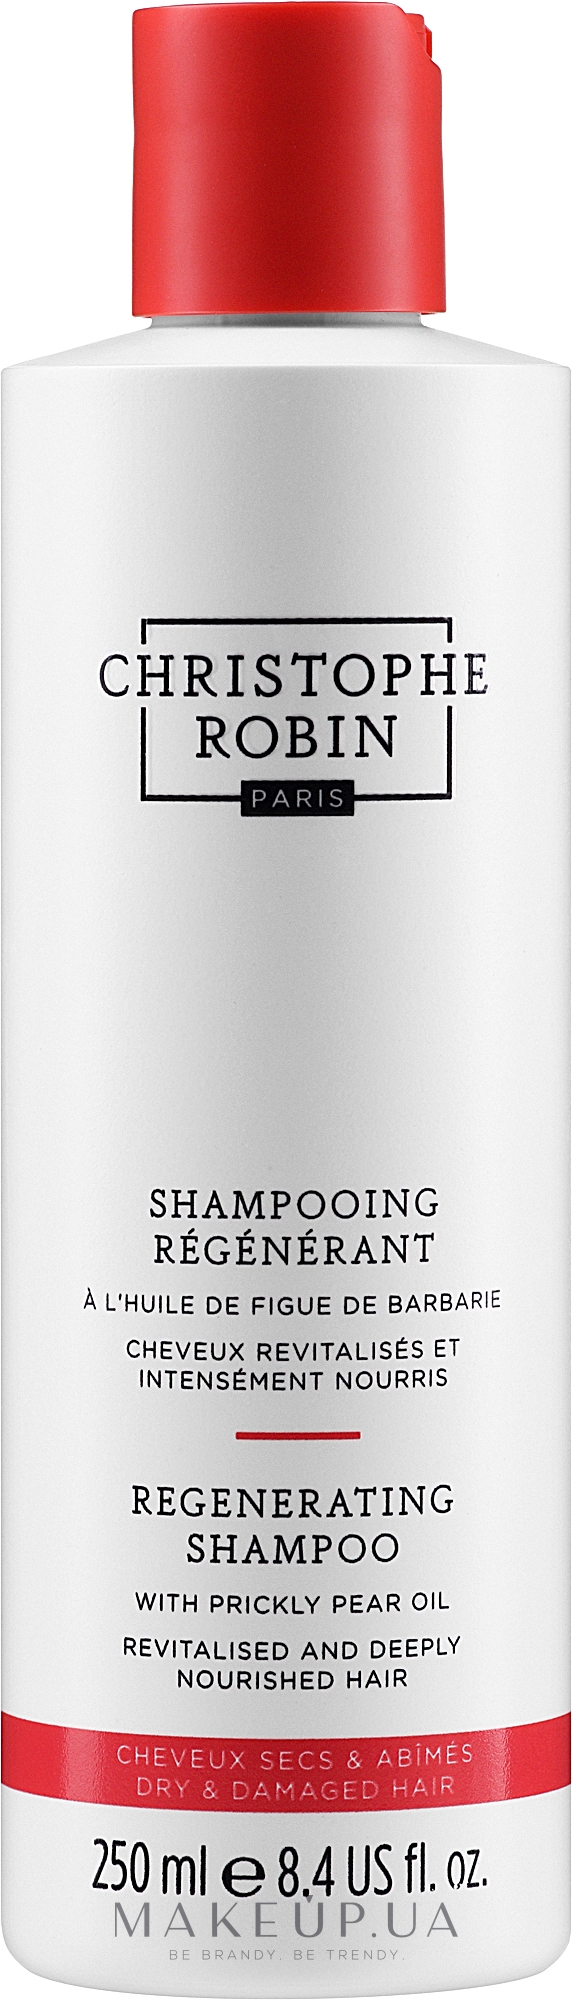 Шампунь с маслом опунции для сухих и поврежденных волос - Christophe Robin Regenerating Shampoo with Prickly Pear Oil — фото 250ml